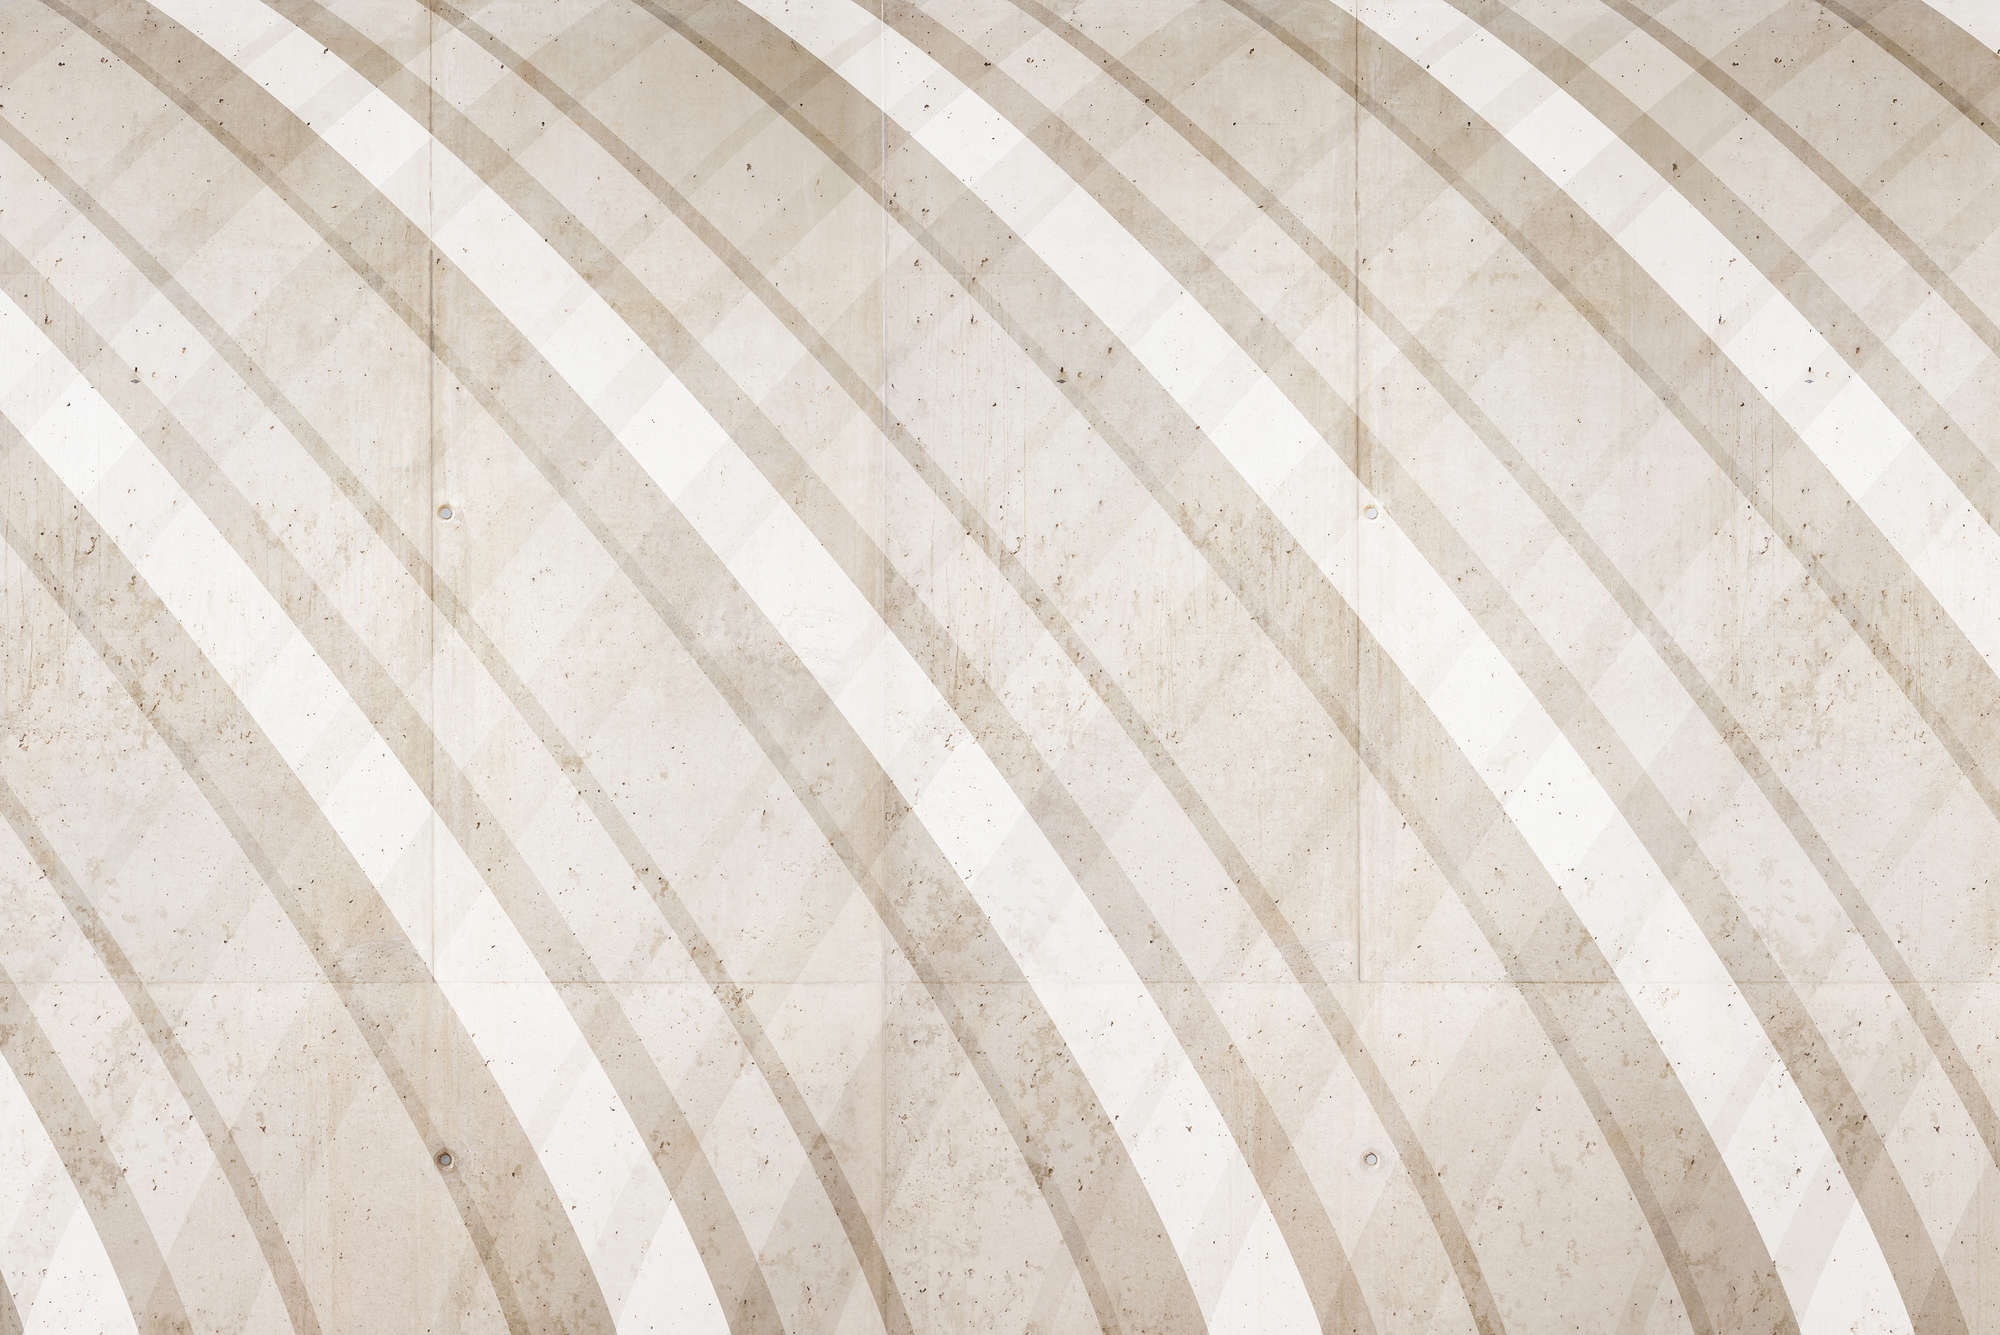             Grafisch behang met rond streeppatroon beige op parelmoer glad vlies
        